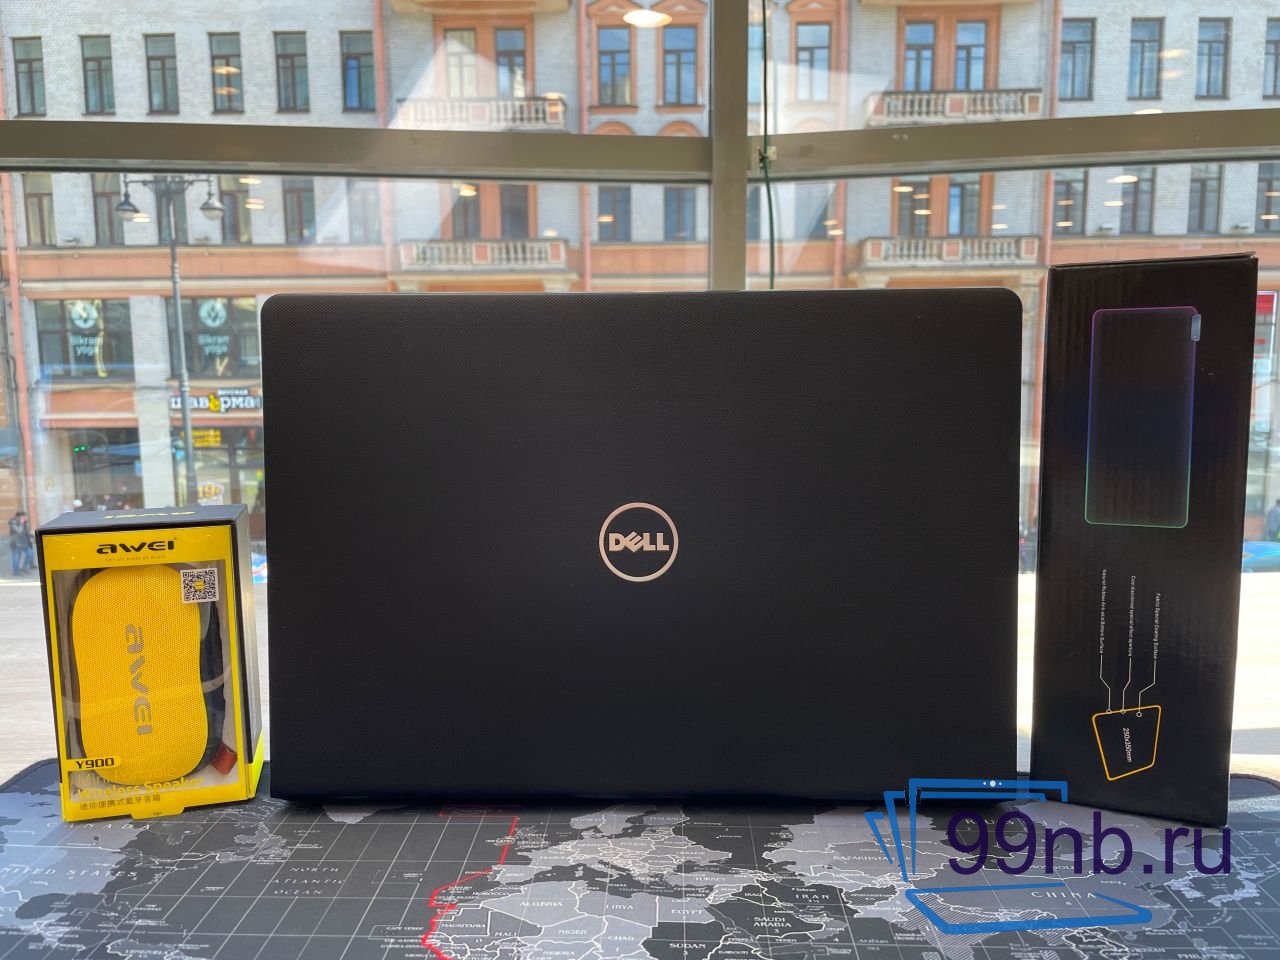  Ноутбук Dell для работы и учёбы ребёнку